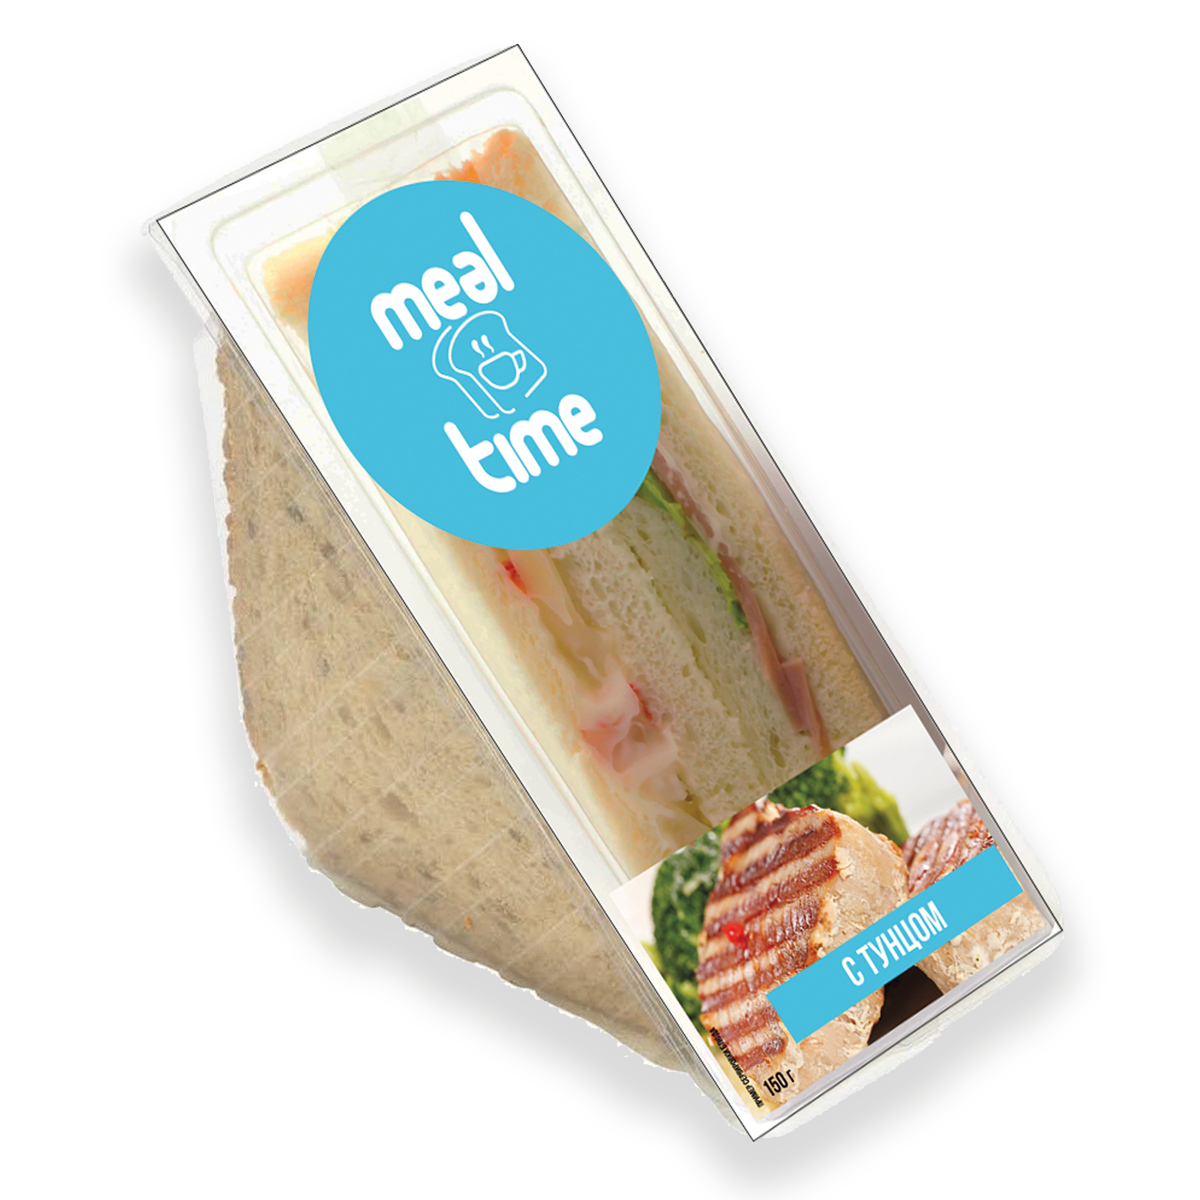 Сэндвичи для кафе купить оптом - замороженные бутерброды в упаковке